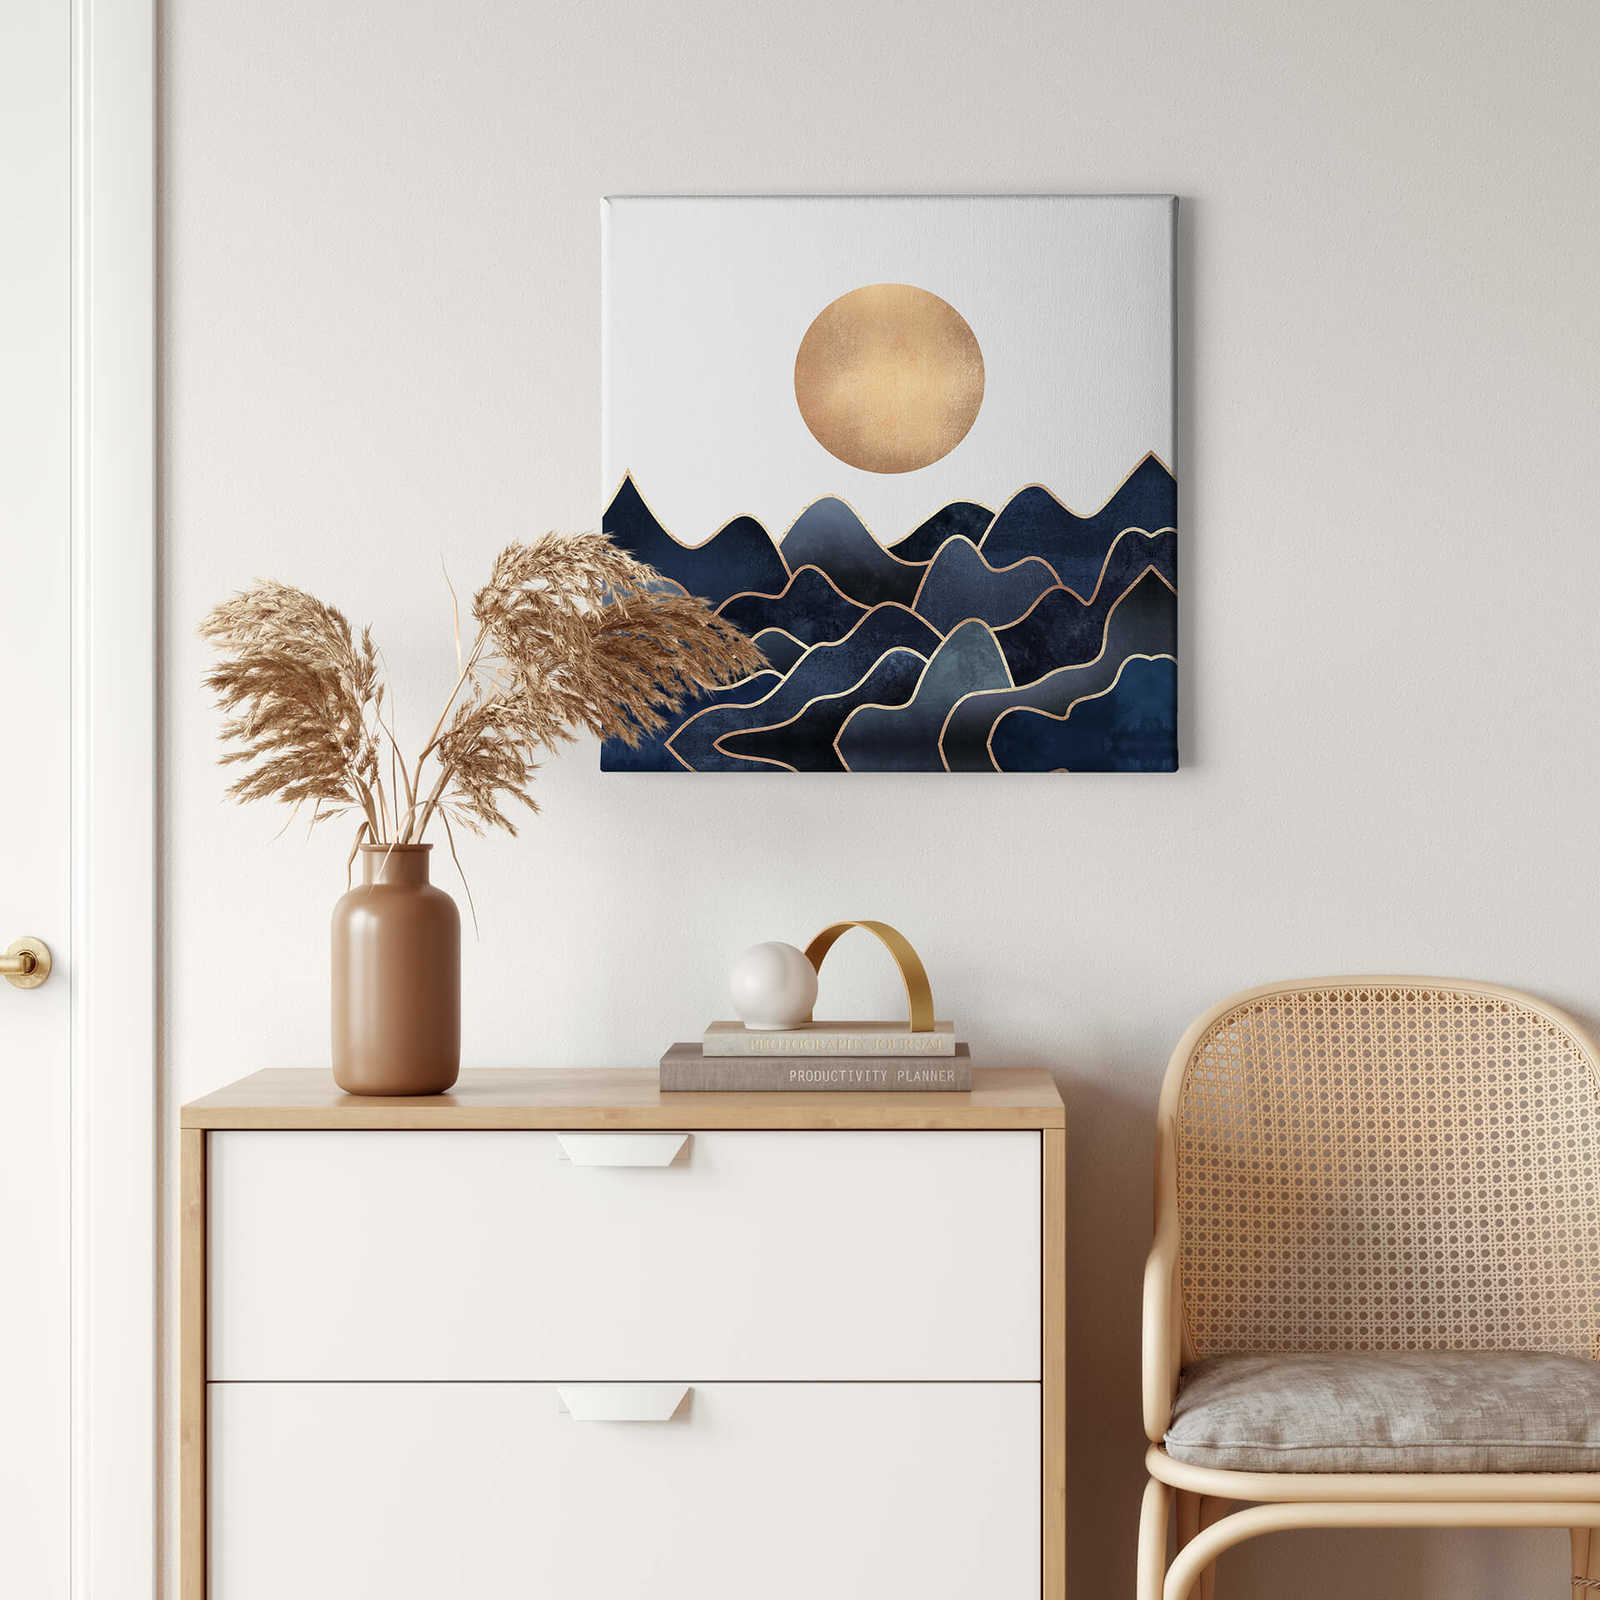             Keilrahmenbild Wellen & Sonne von Fredriksson – 0,50 m x 0,50 m
        